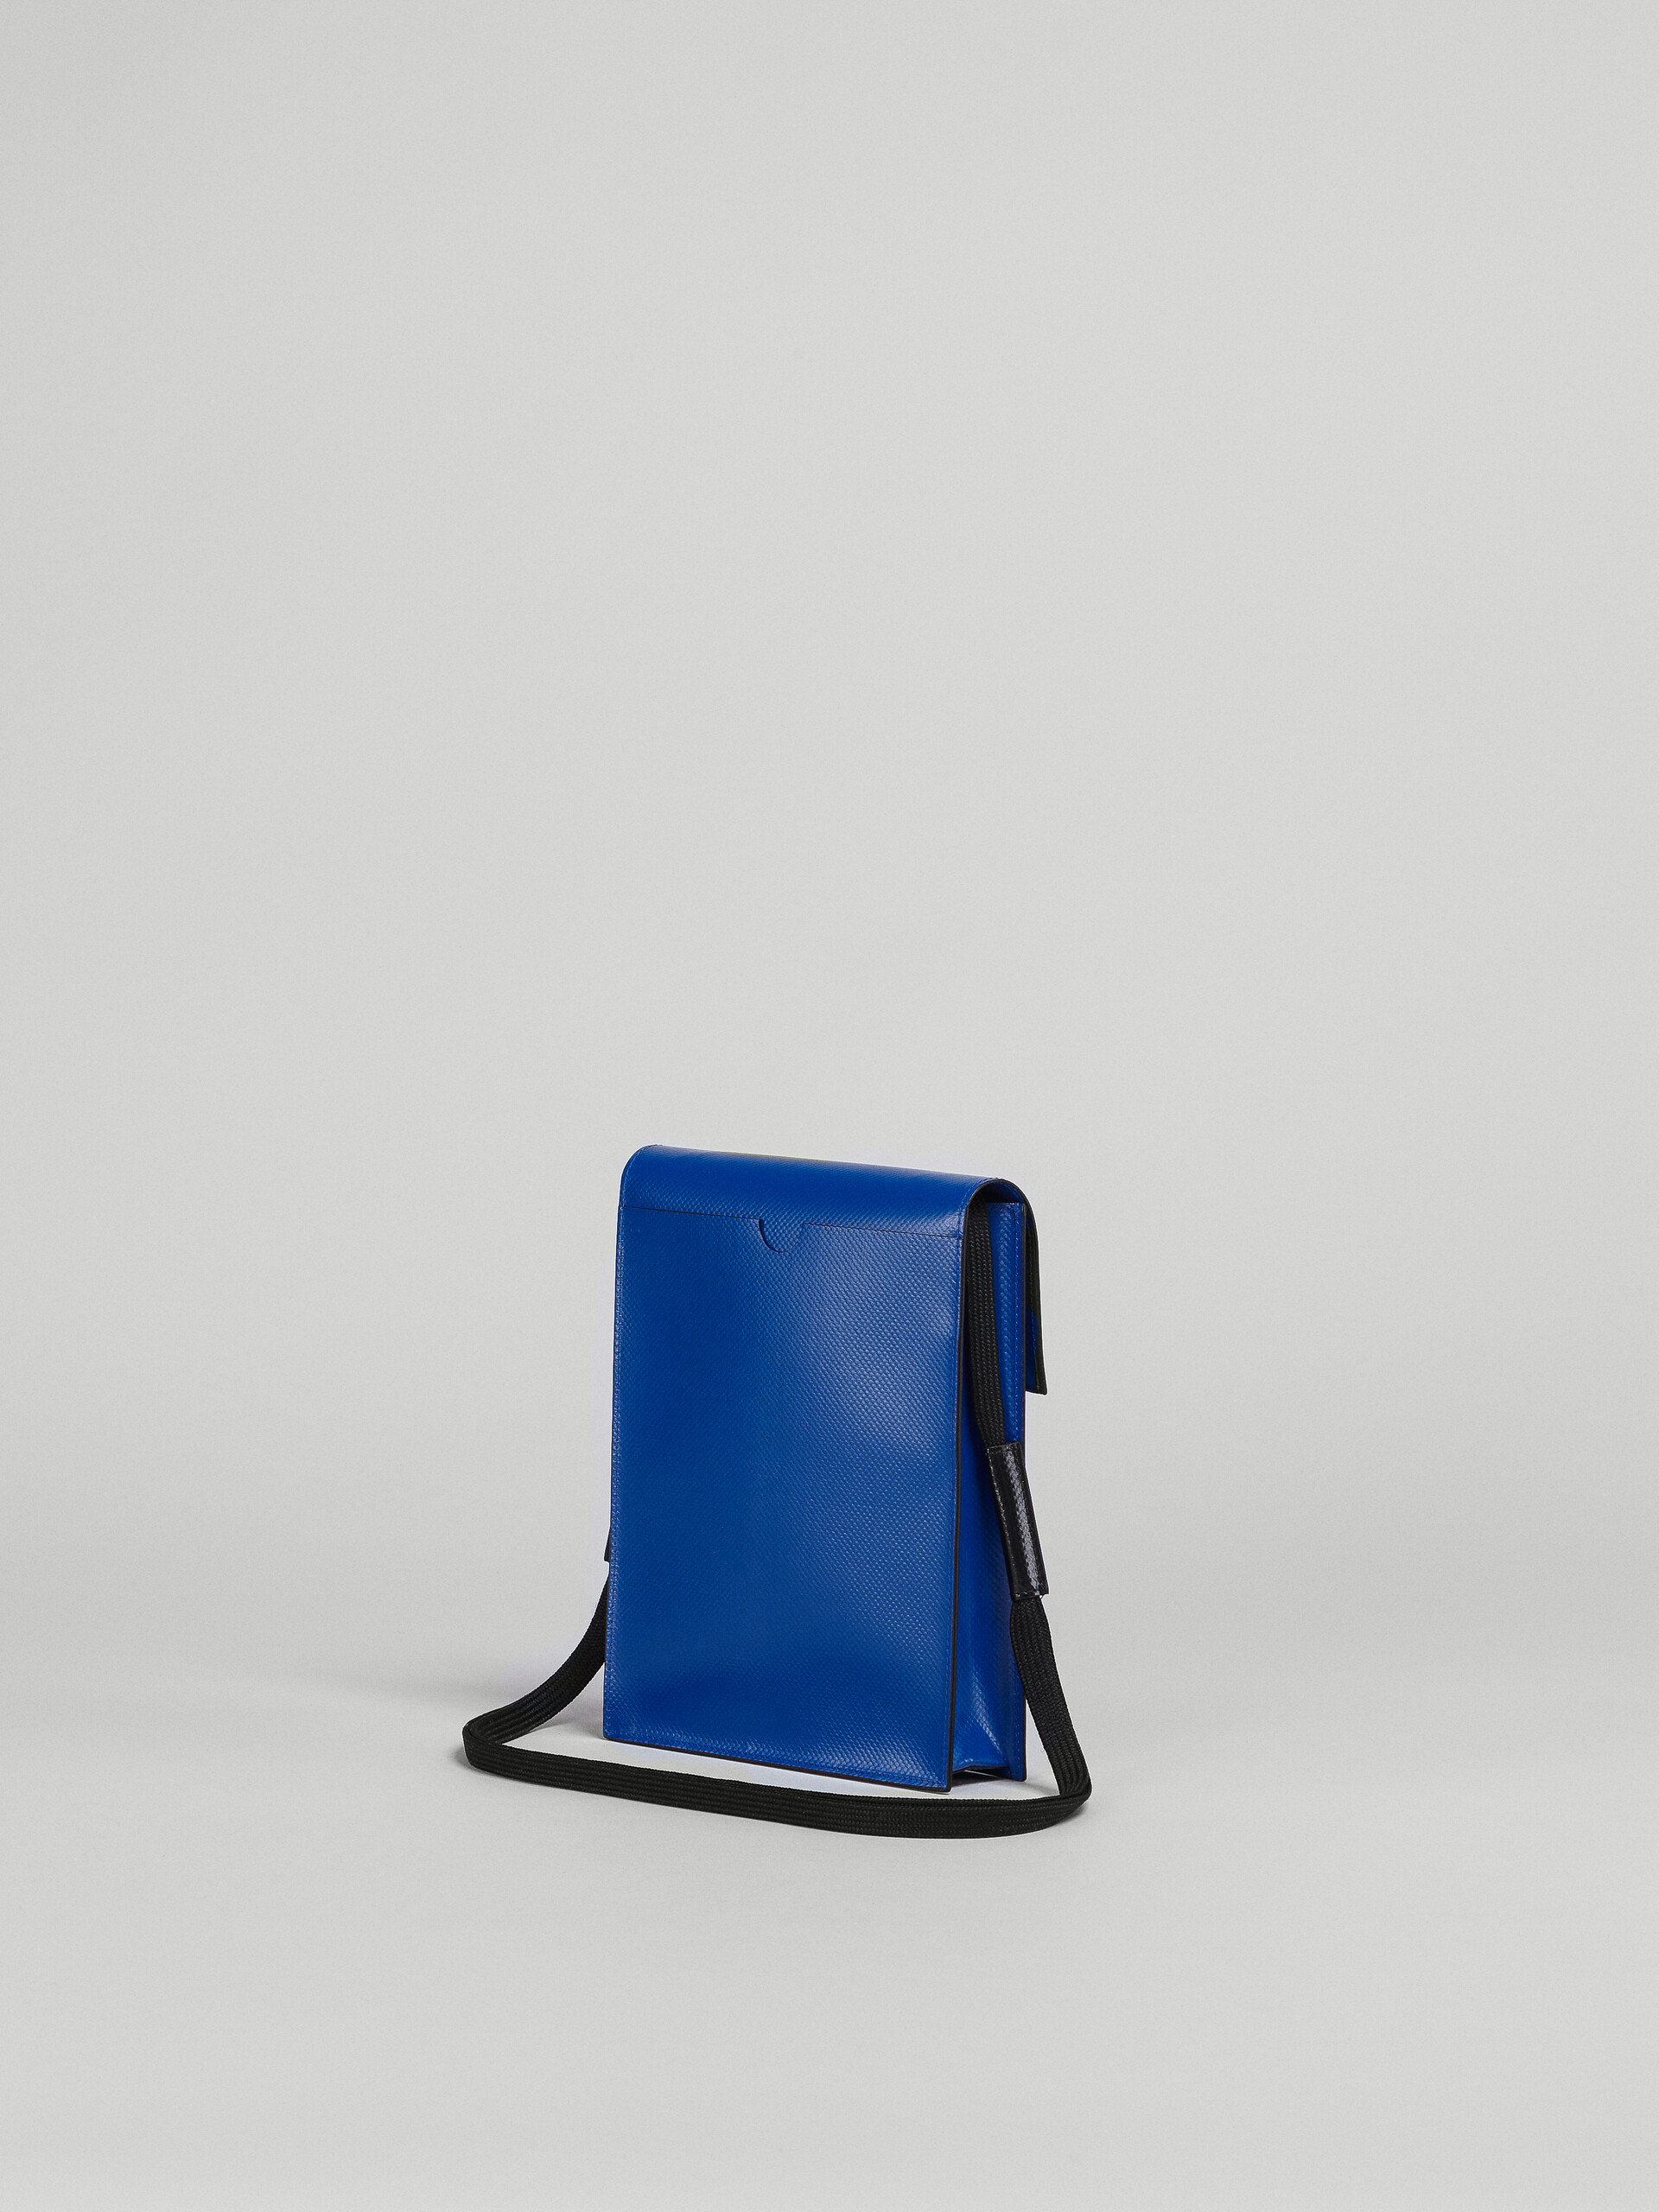 Blue and black TRIBECA shoulder bag